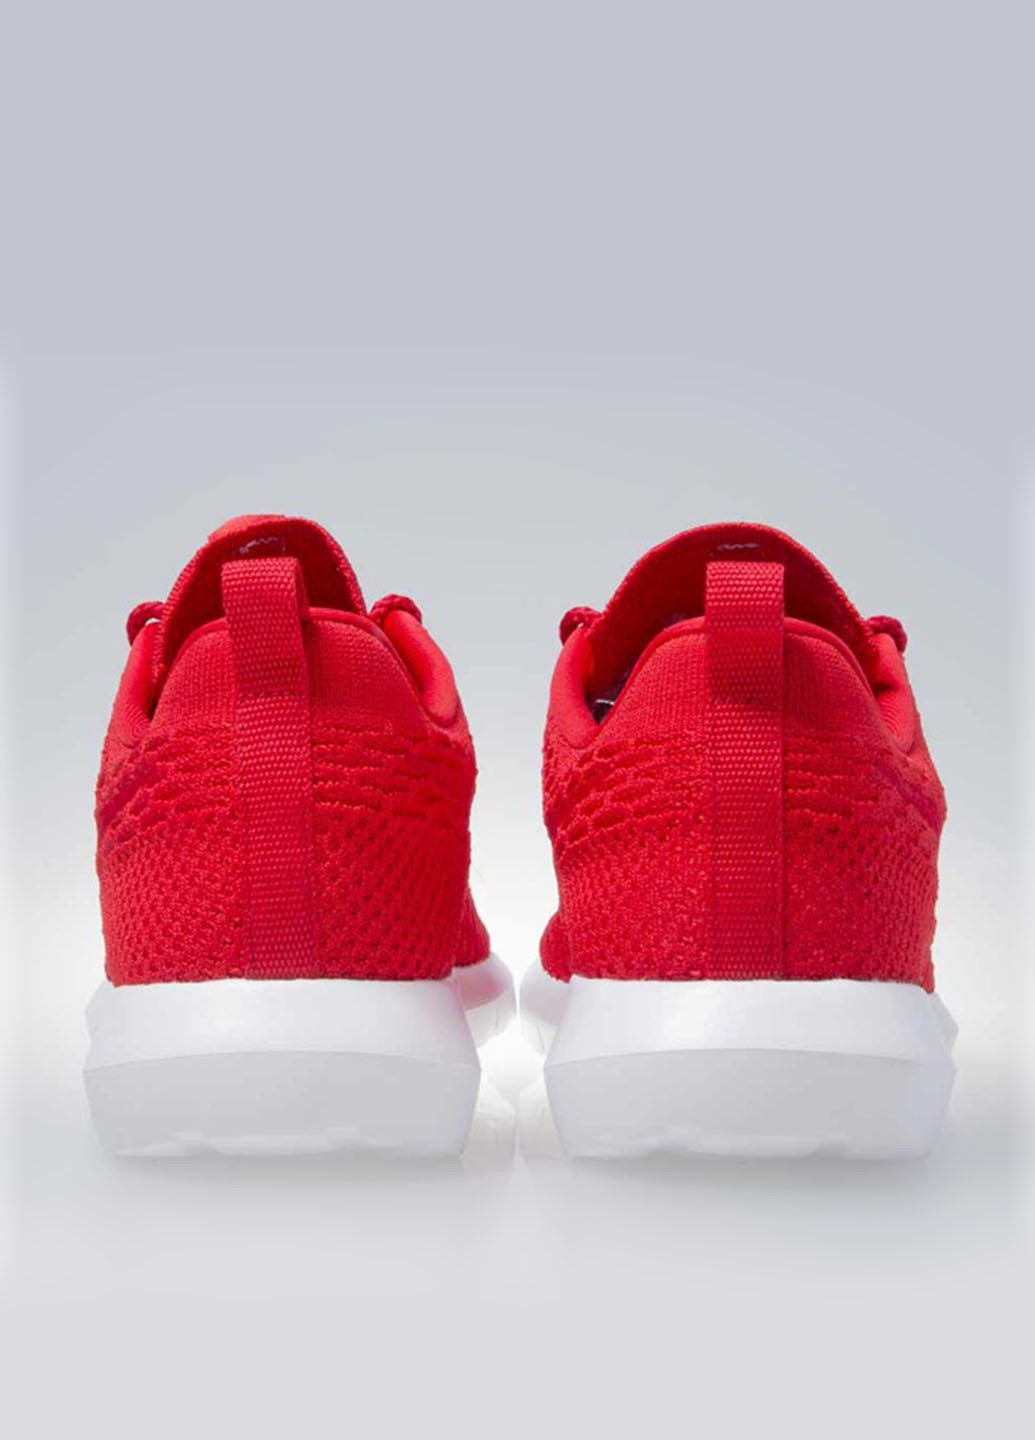 Красные демисезонные кроссовки Nike ROSHE NM FLYKNIT